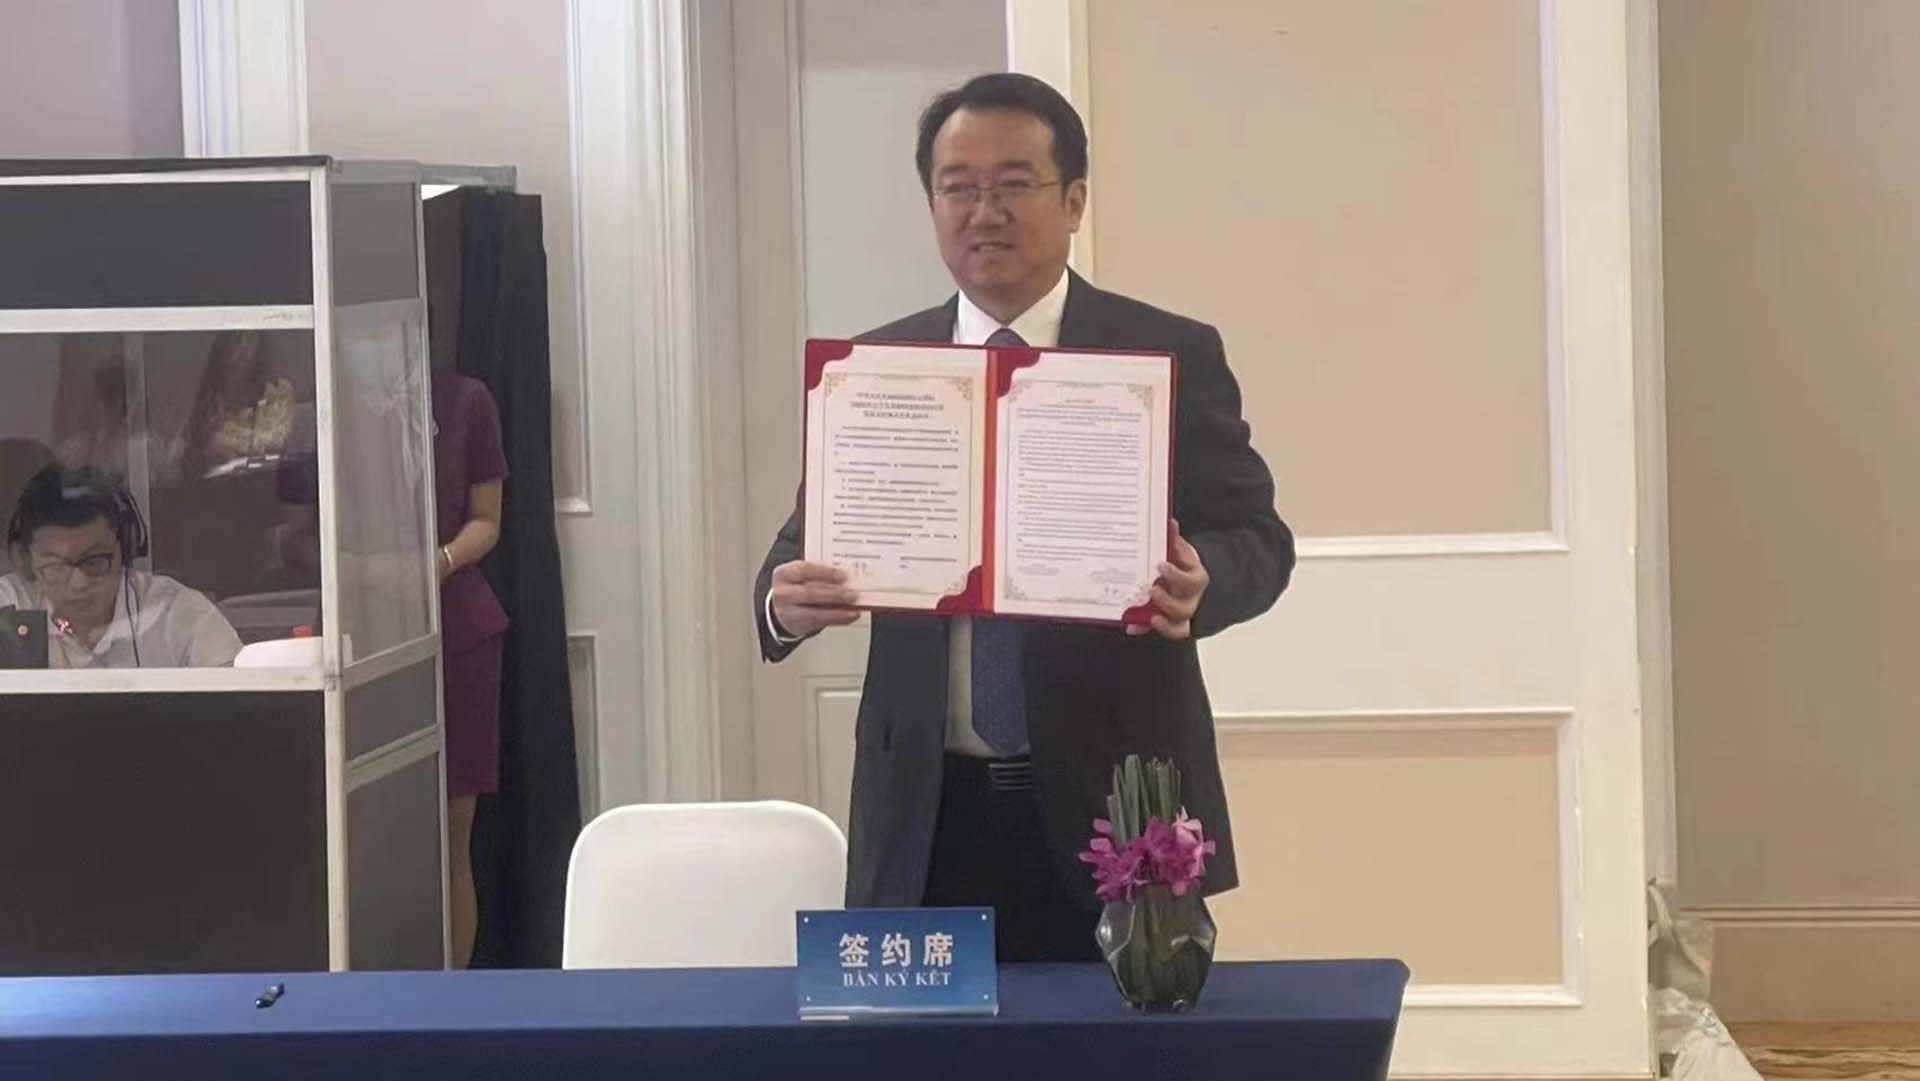 Thị xã Sapa của tỉnh Lào Cai và quận Ngũ Hoa của thành phố Côn Minh ký Ý hướng thư chính thức thiết lập quan hệ hữu nghị.